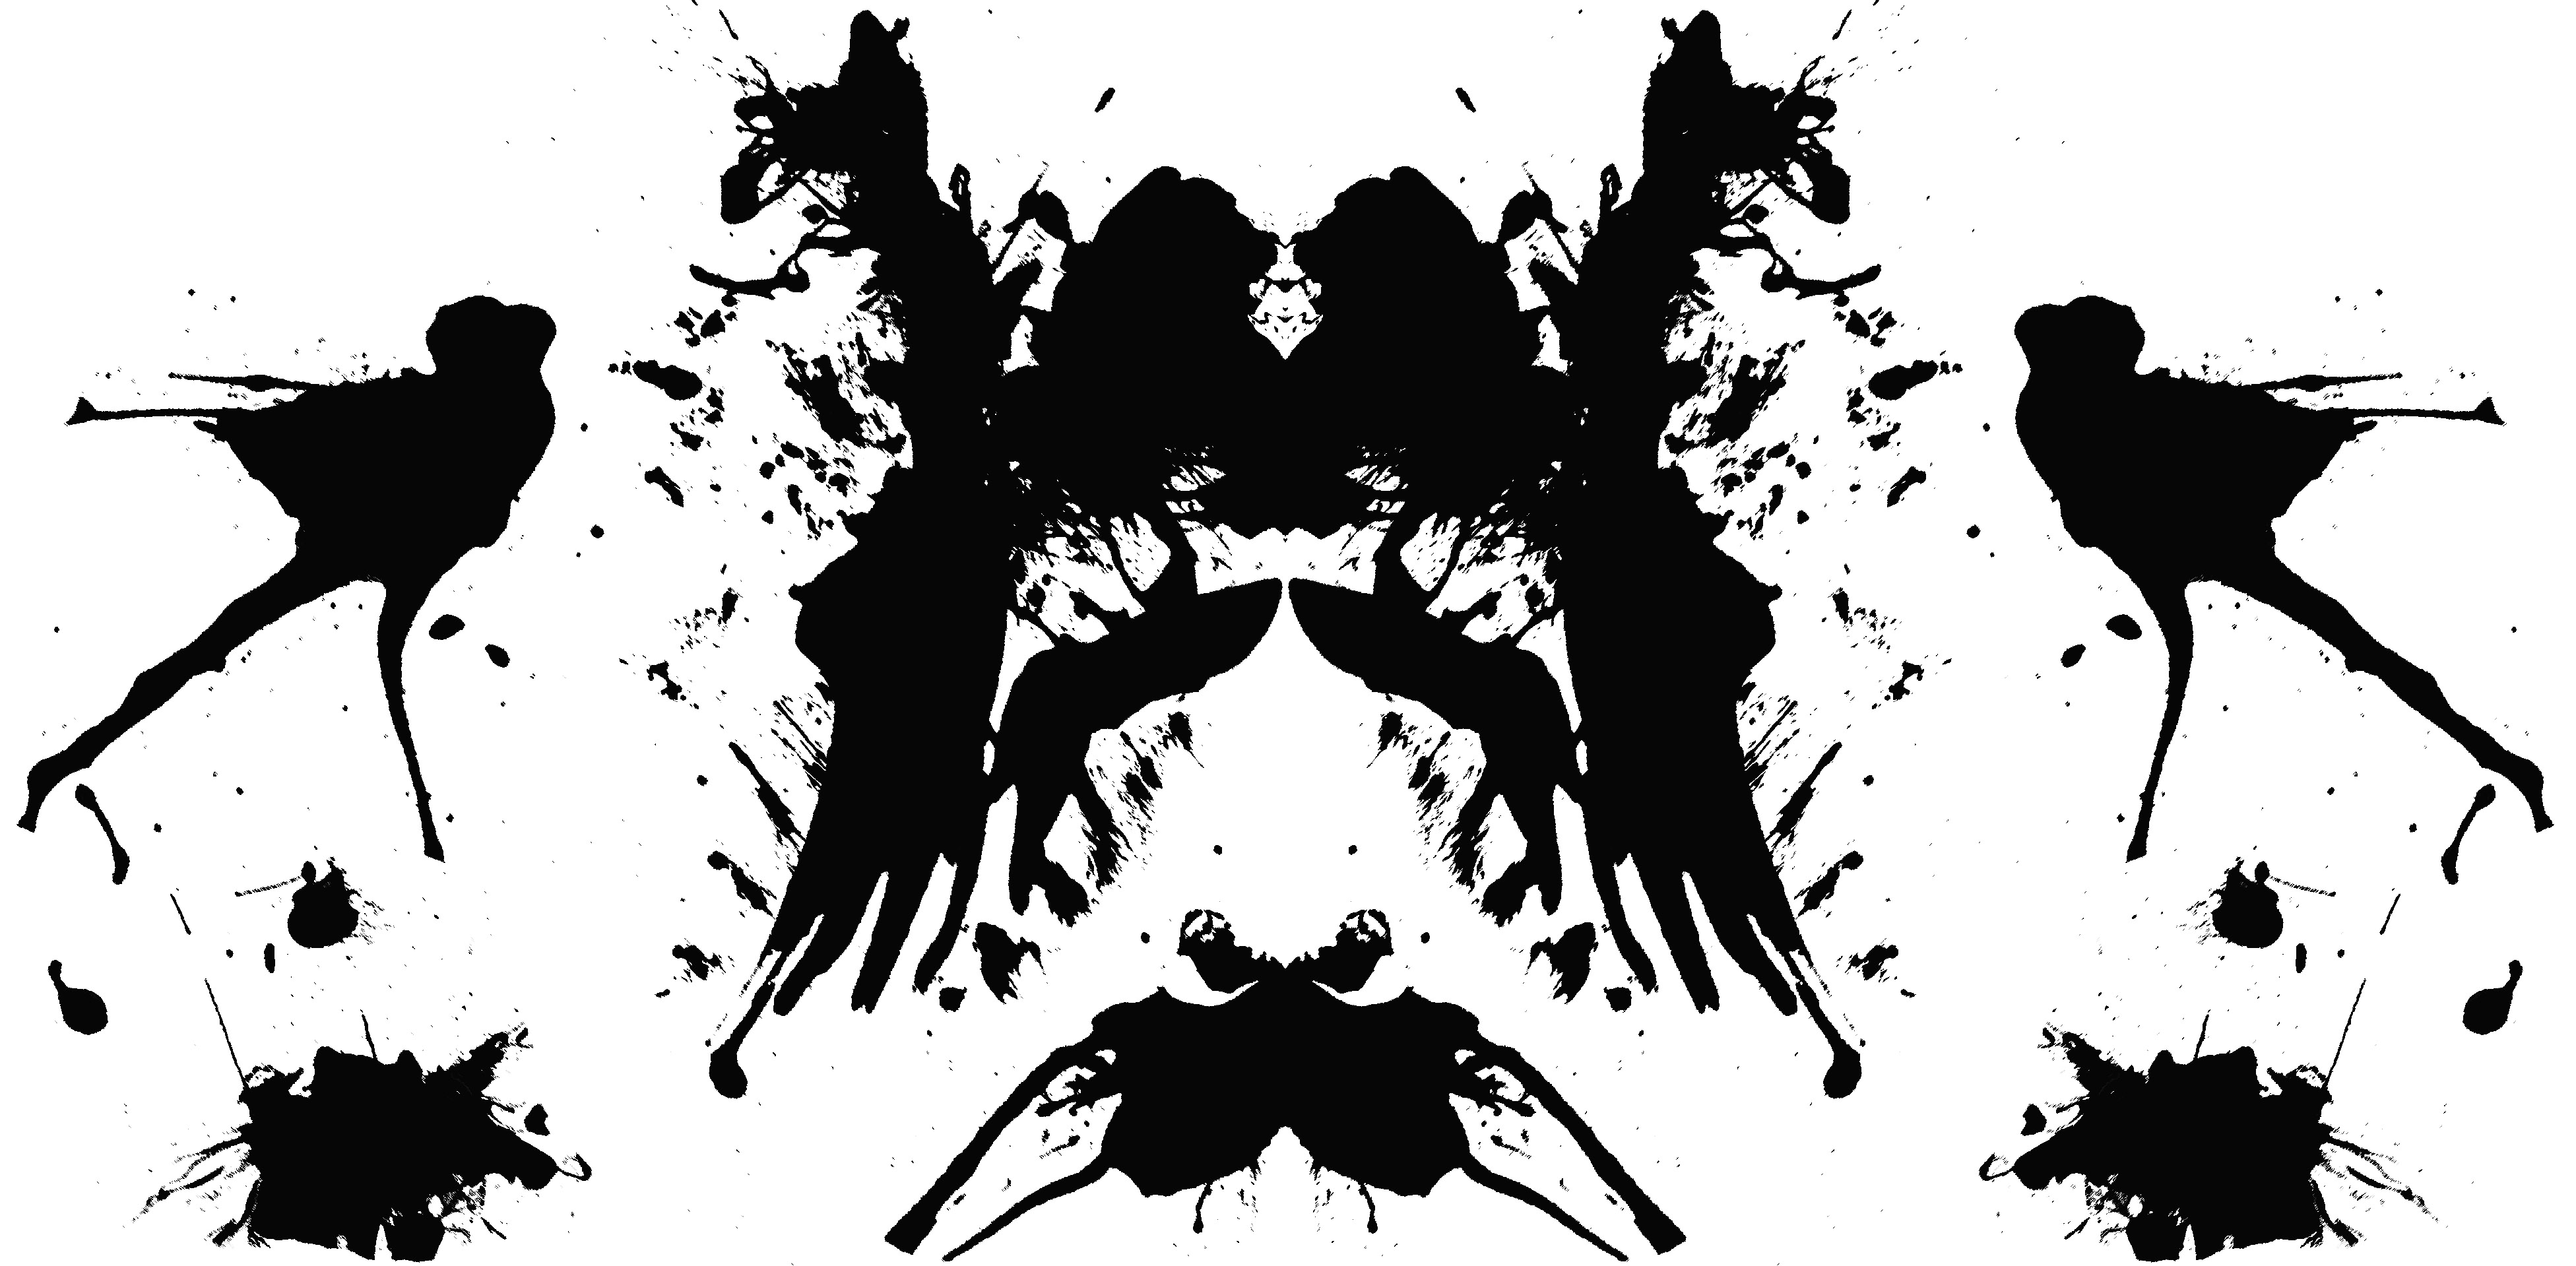 The Rorschach Ink Blot Method